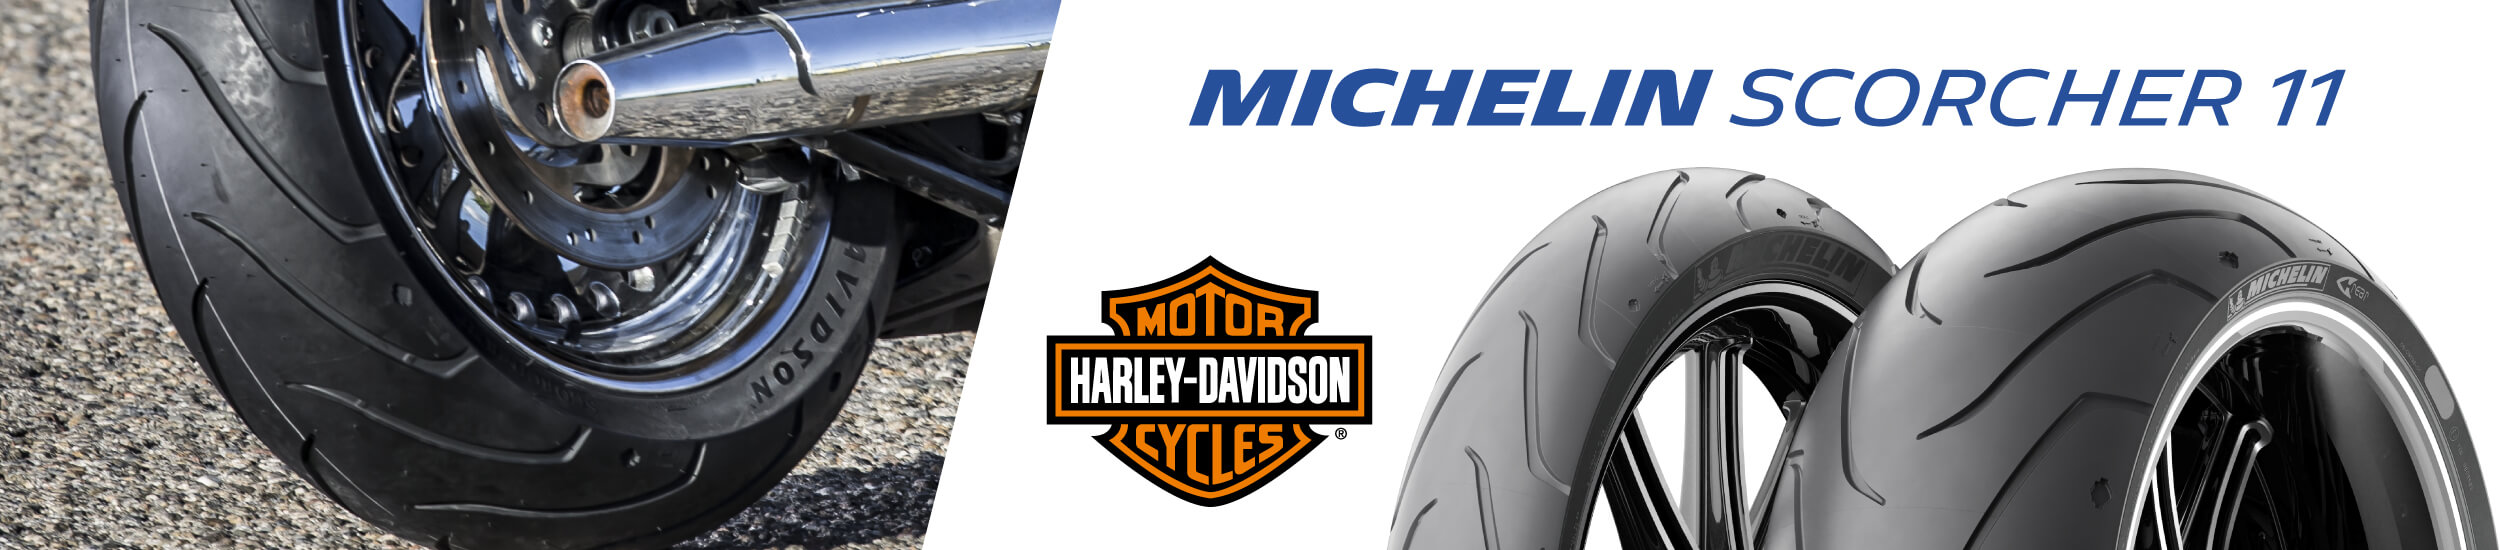 Michelin Scorcher 11 Banner